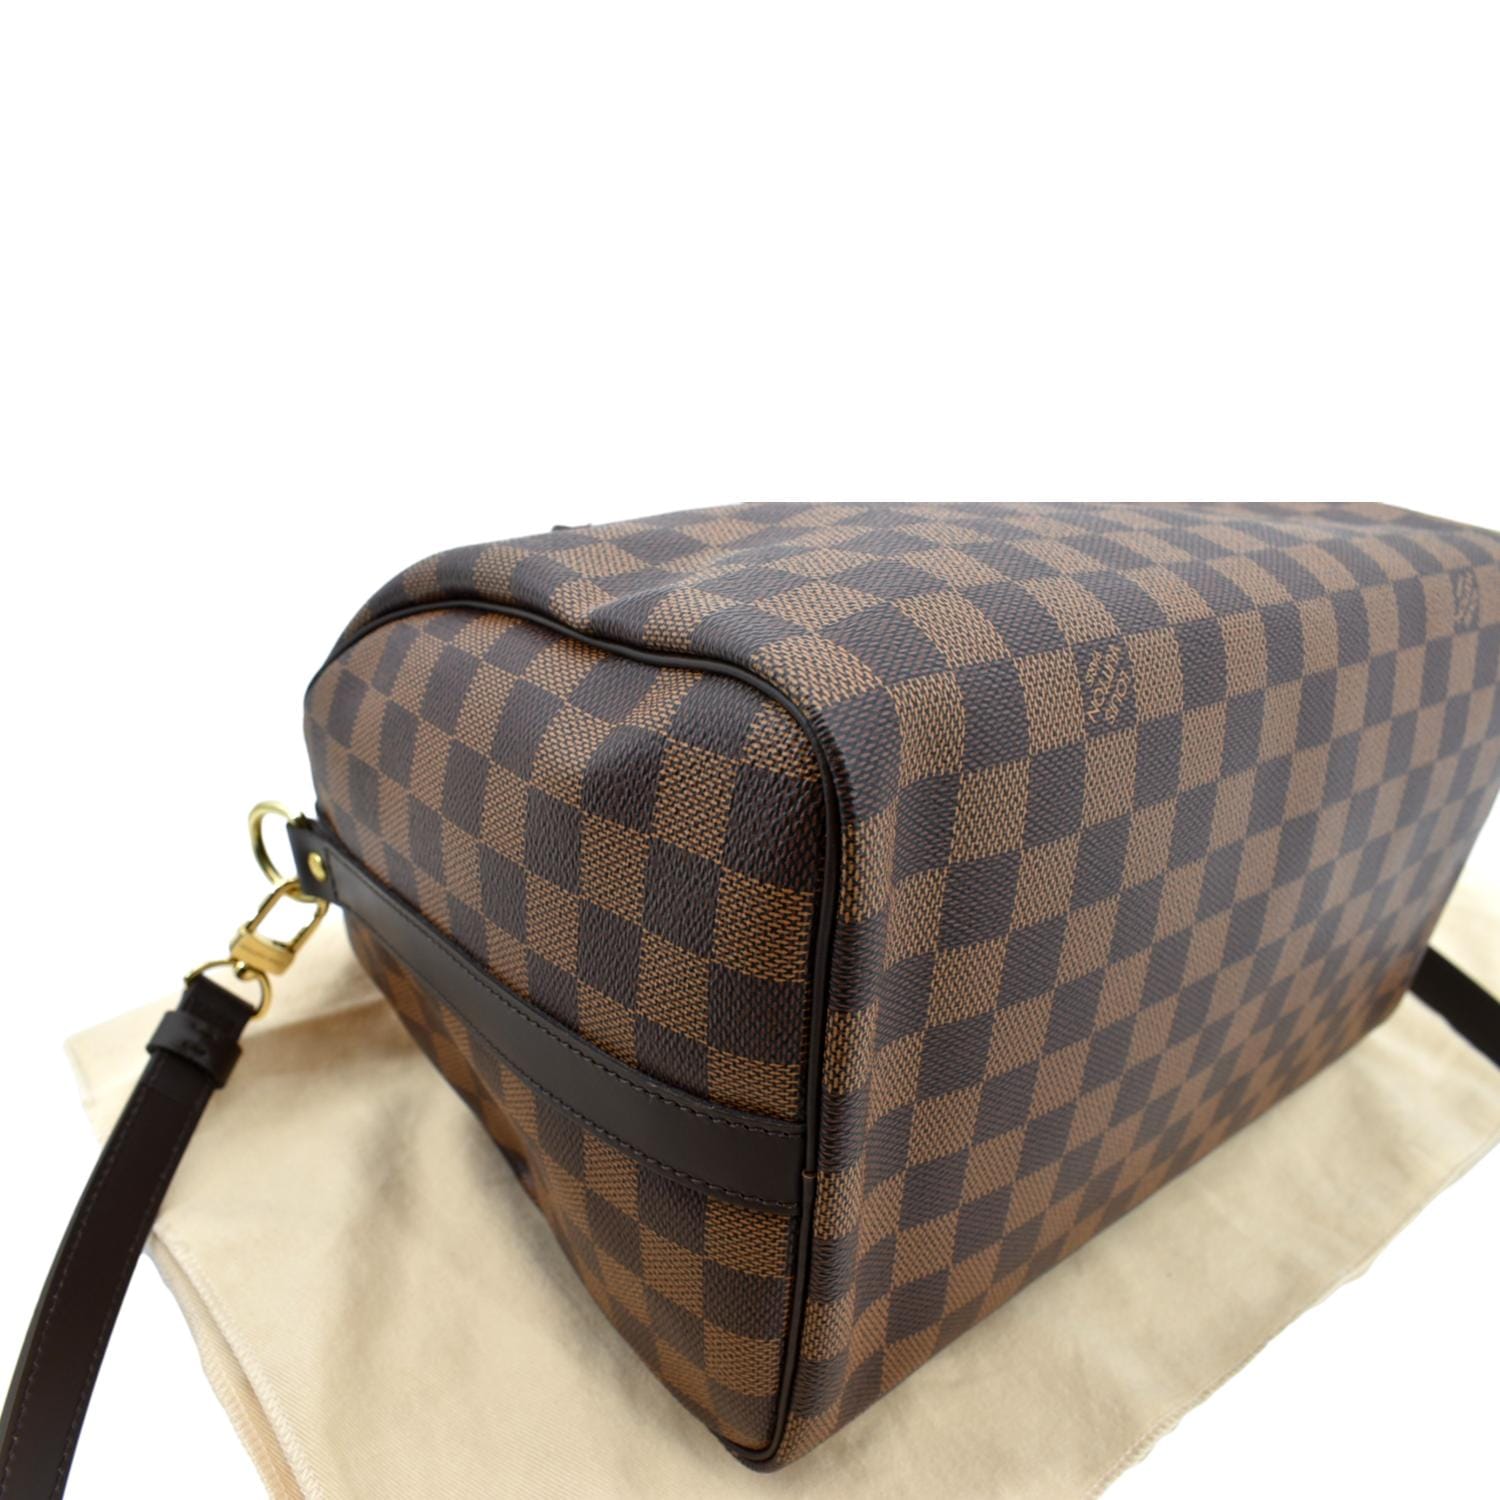 Louis Vuitton - Authenticated Speedy Bandoulière Handbag - Leather Brown Plain for Women, Good Condition